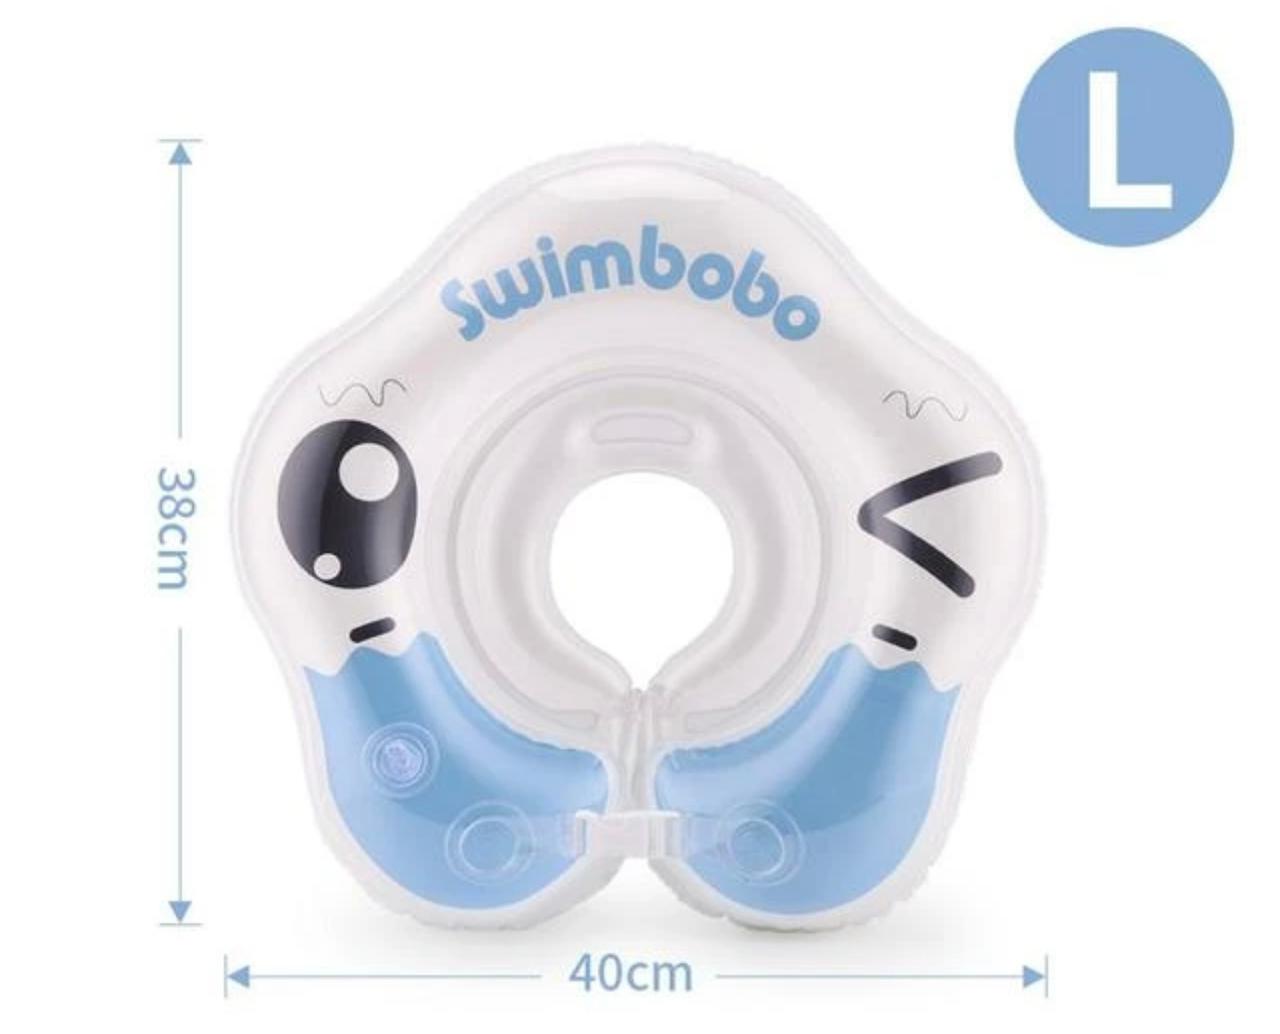 Swimbobo Baby'Swimming Collar